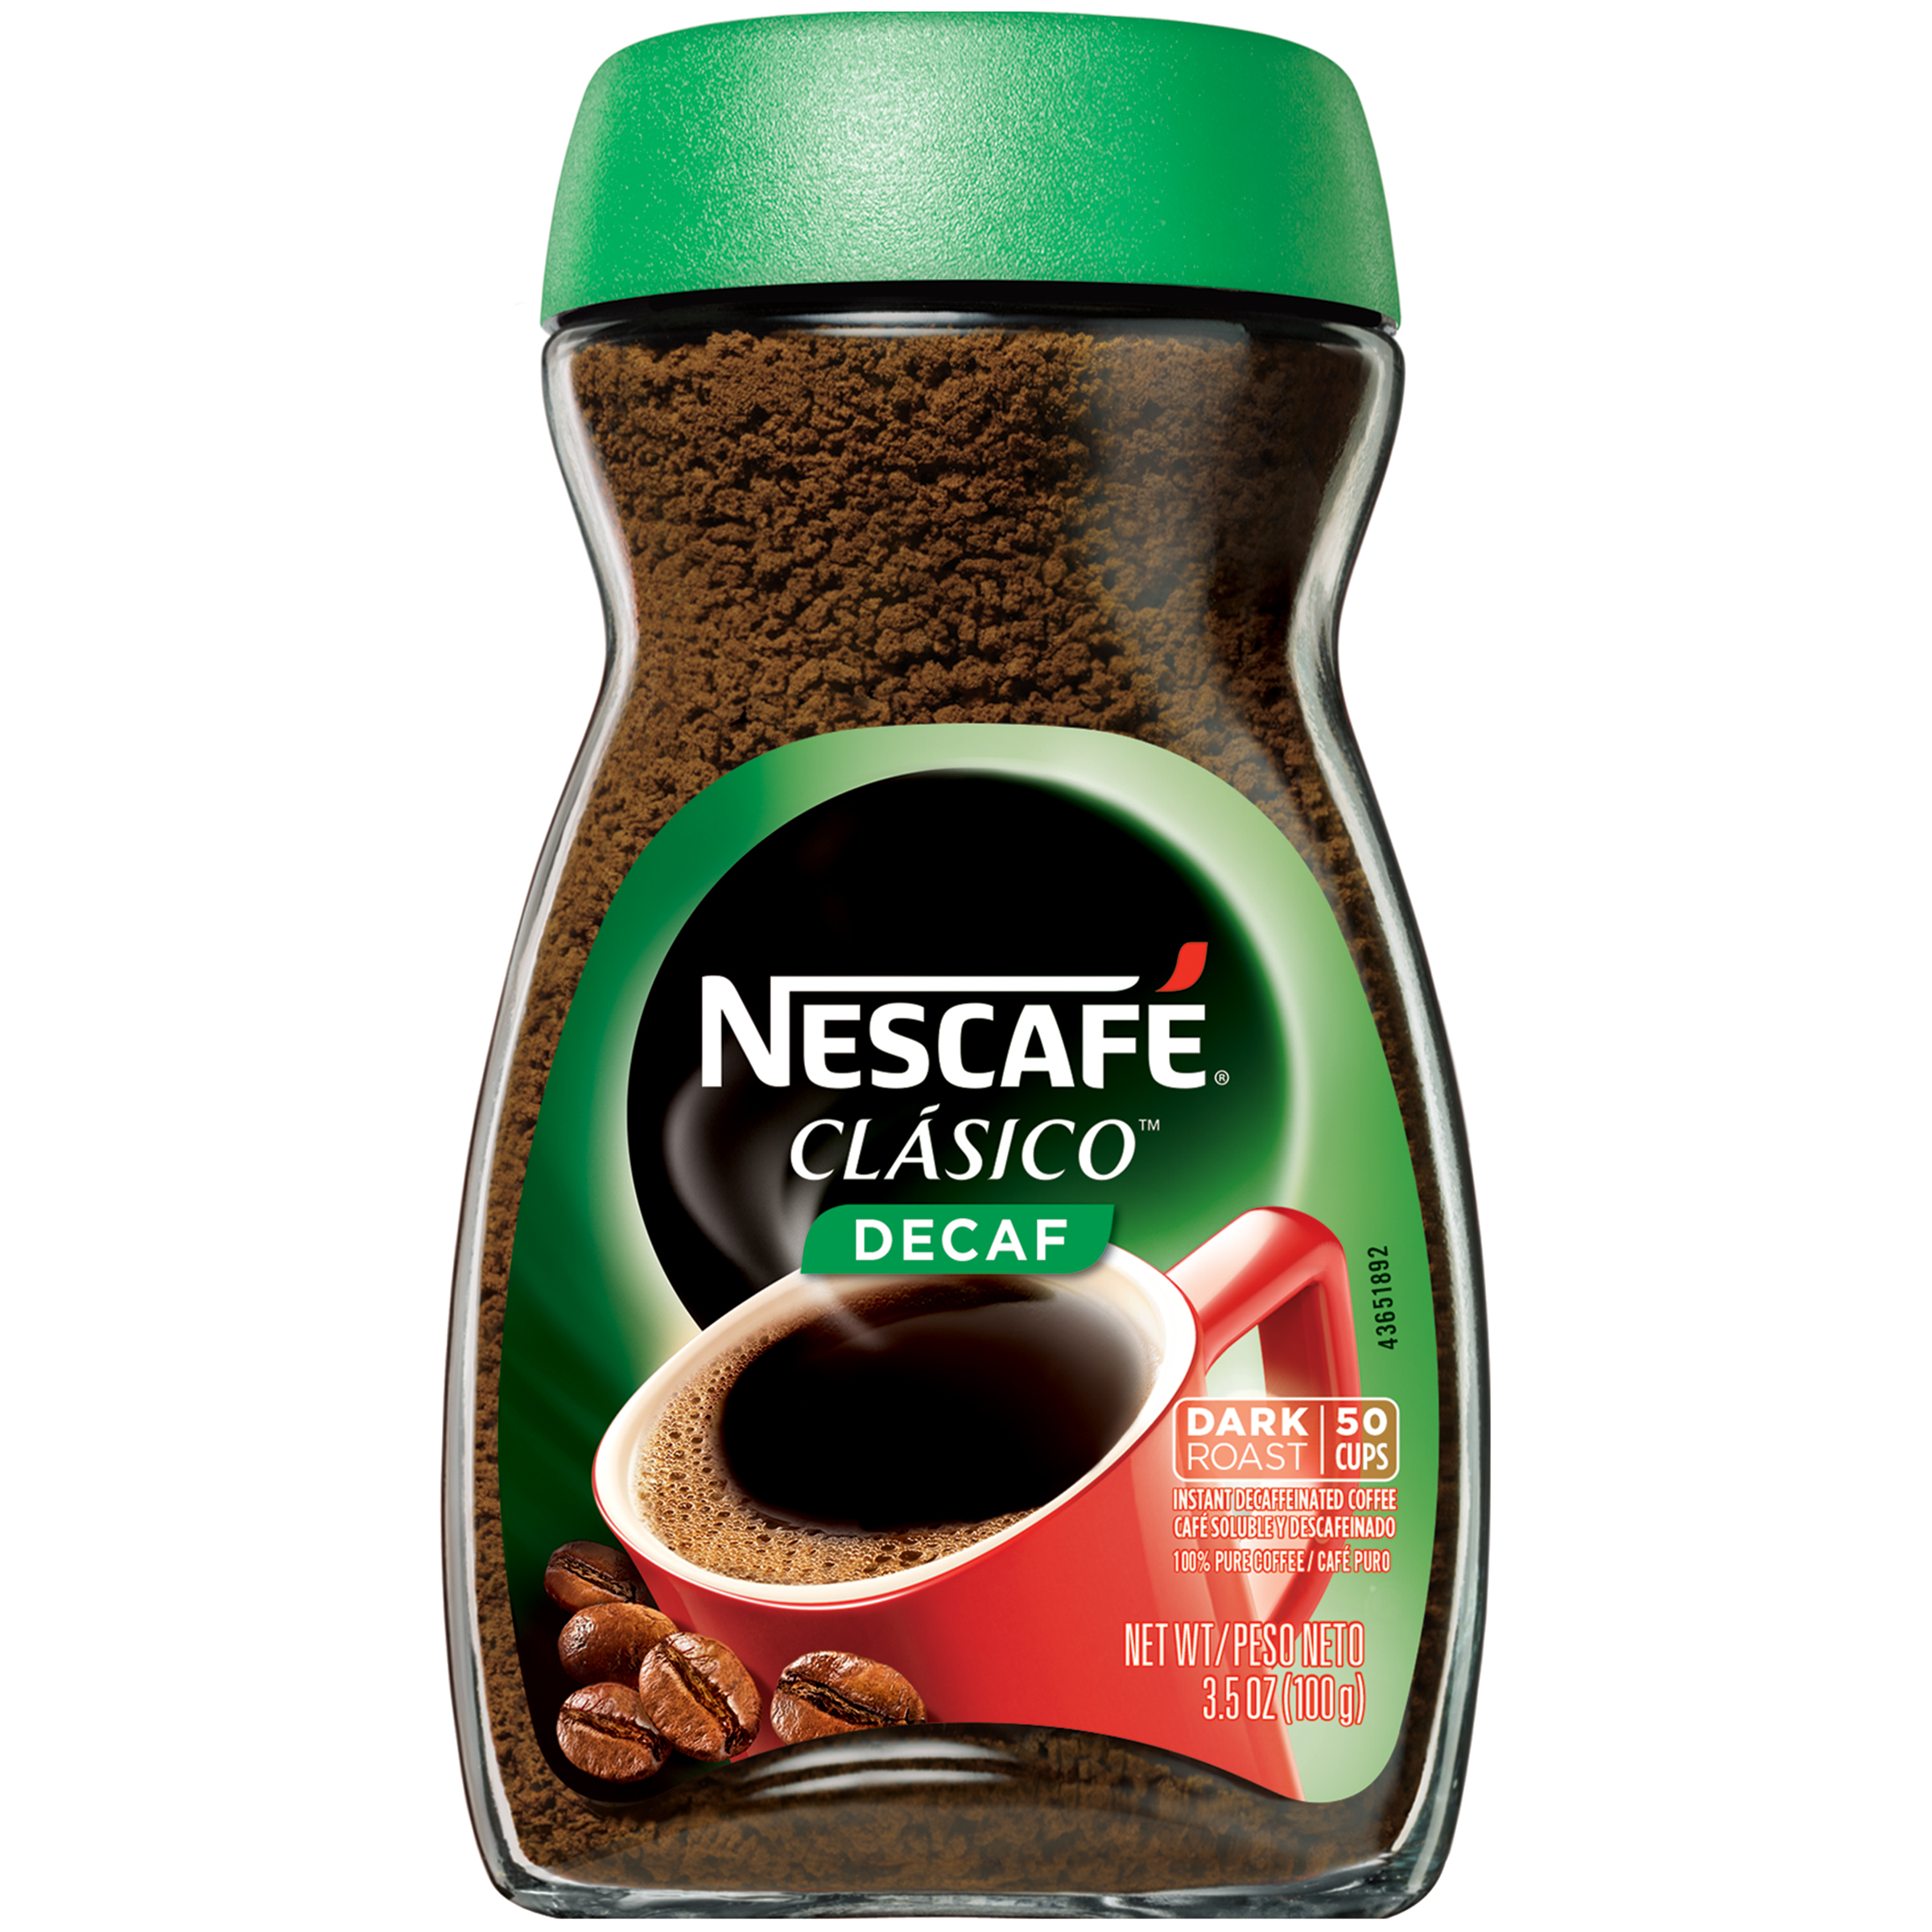 NESCAFE CLASICO Decaf Dark Roast Instant Coffee 3.5 oz